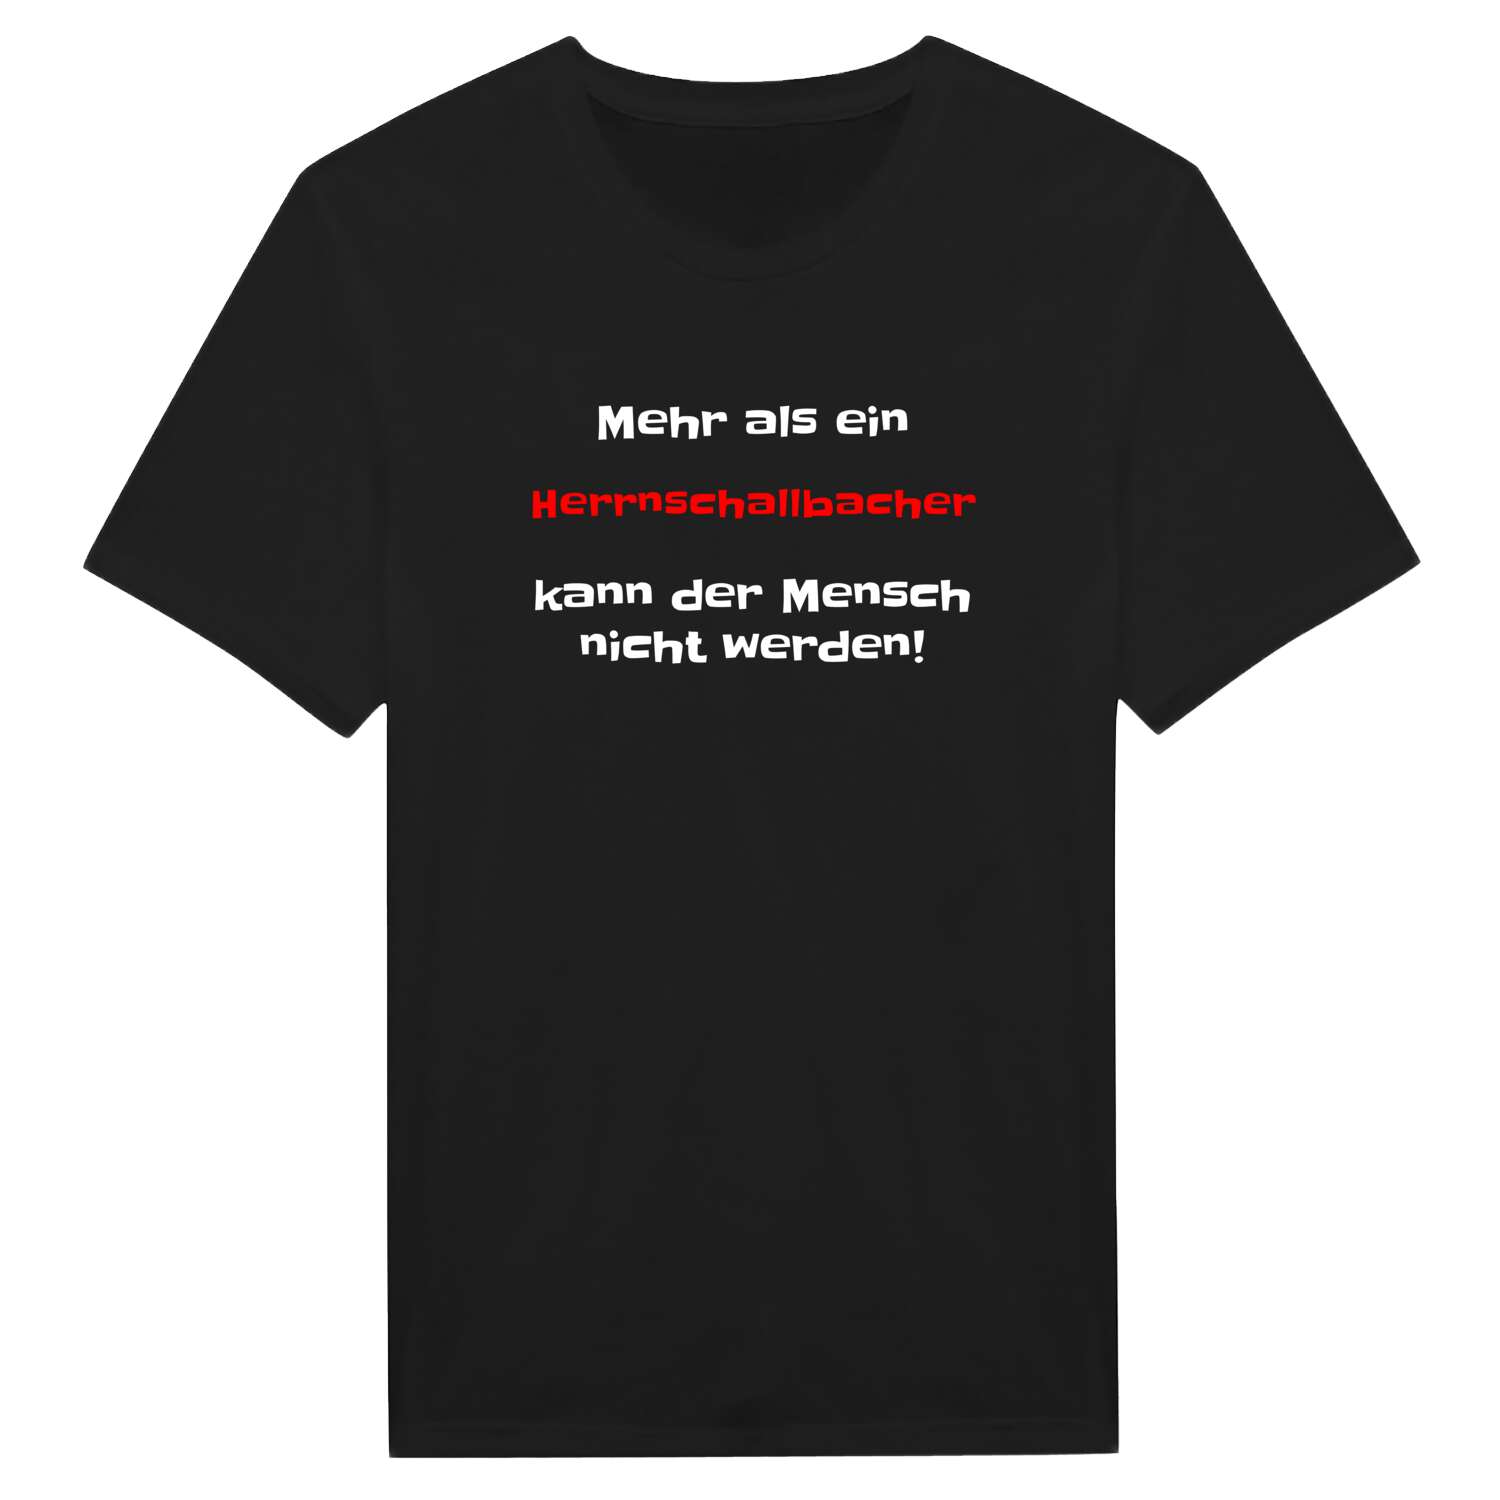 Herrnschallbach T-Shirt »Mehr als ein«